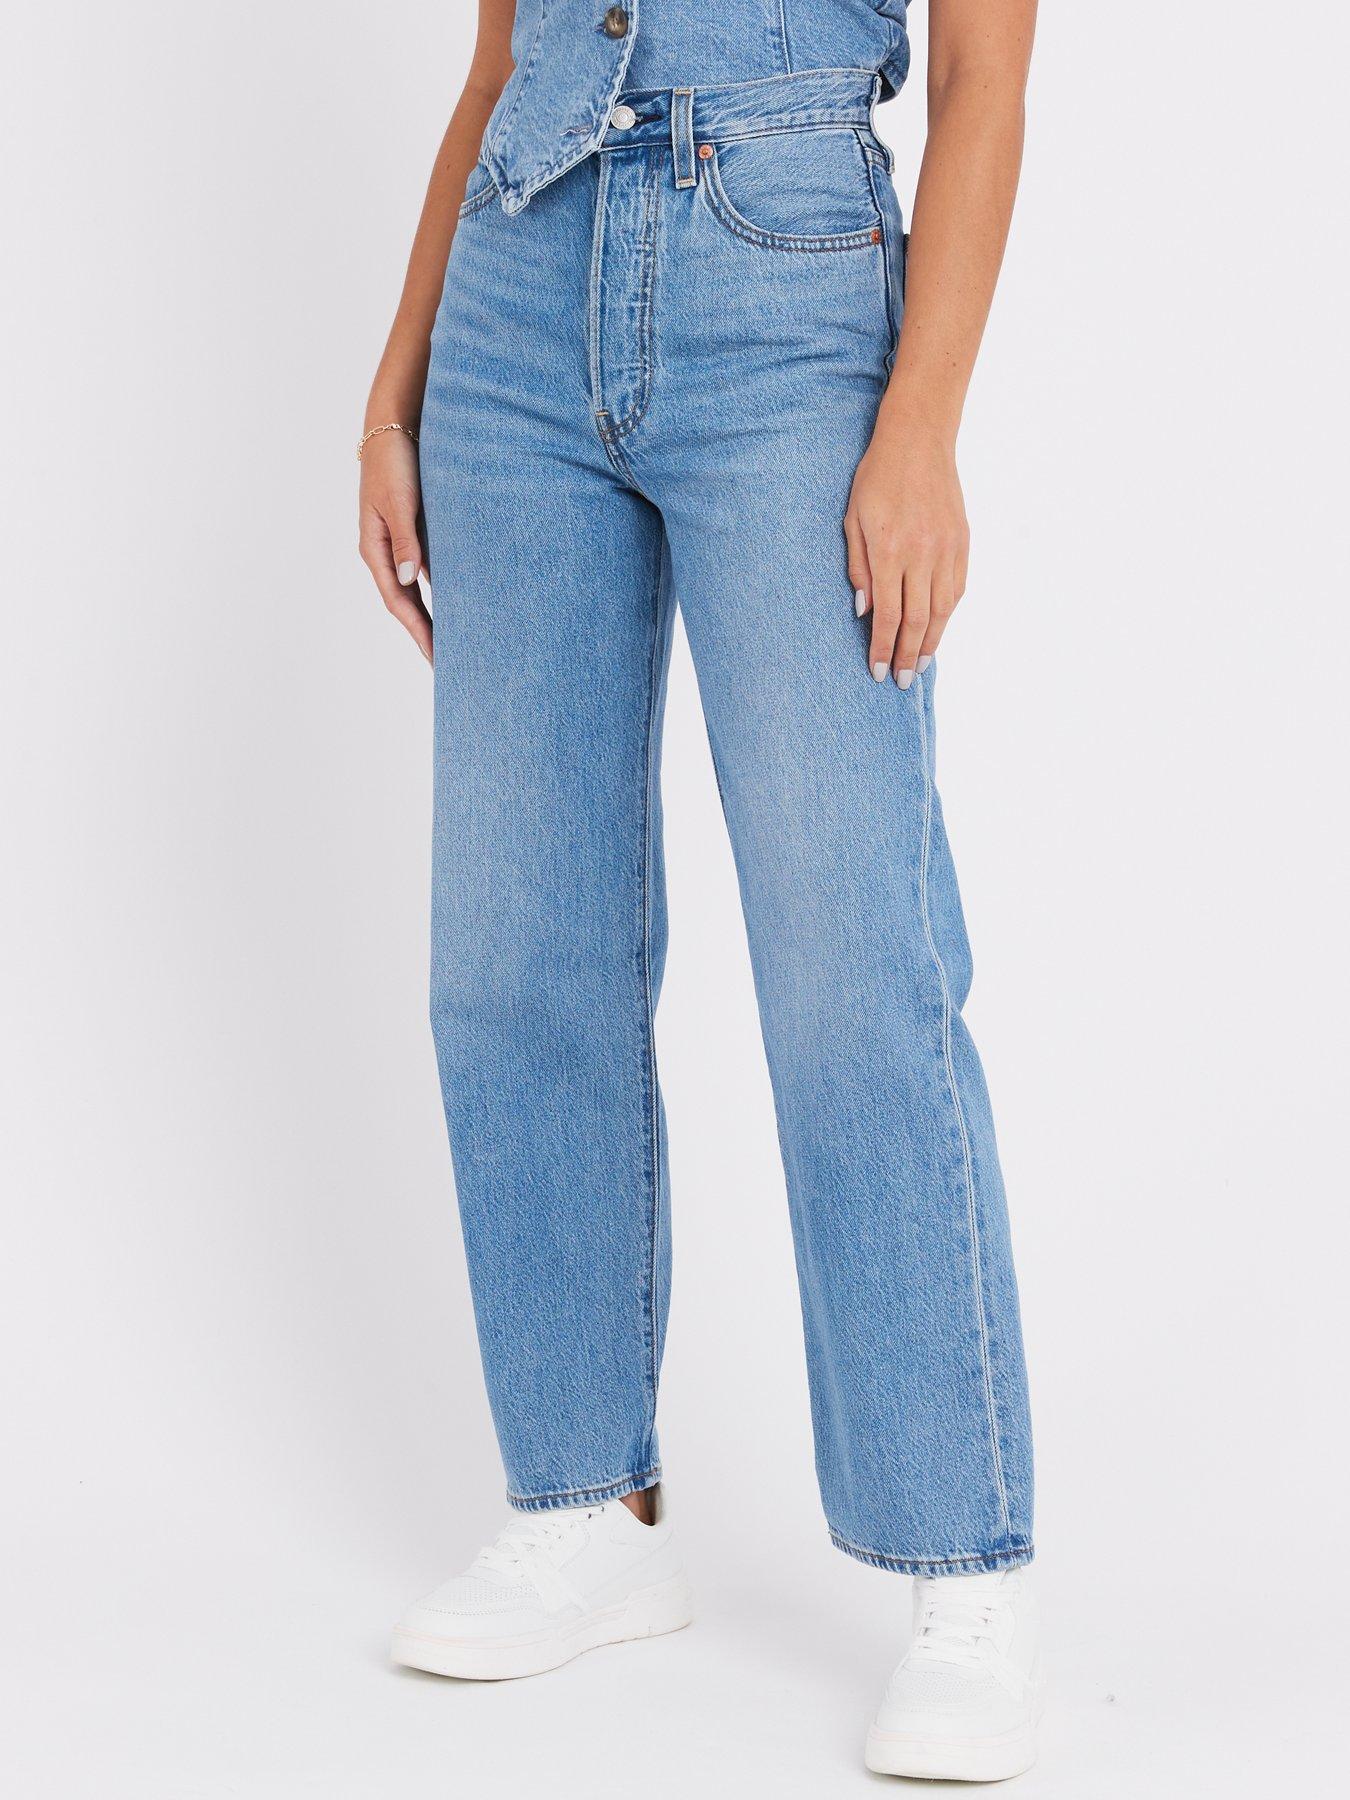 Levis 414 Classic Straight Women's Jeans (Plus Size) Blue Mixtape